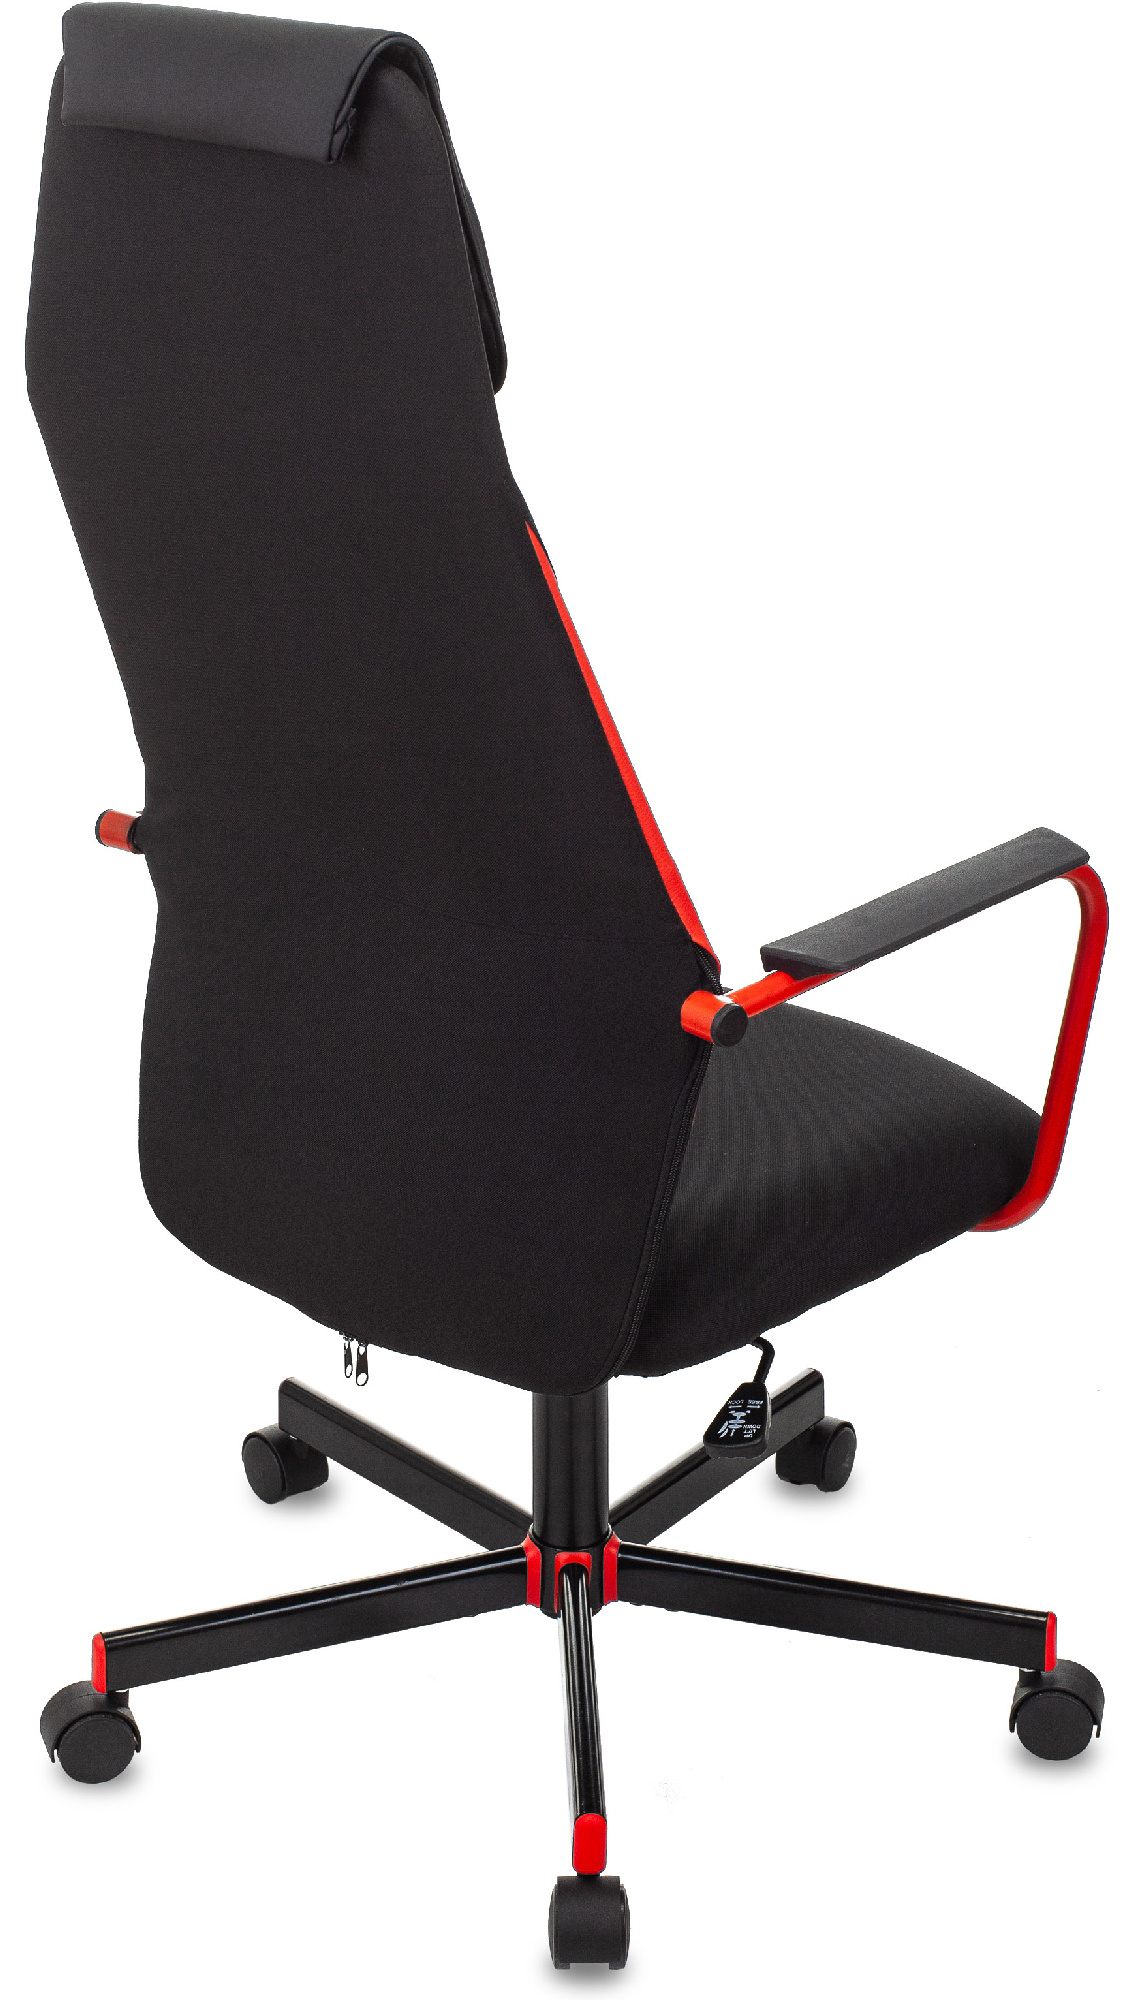 Кресло игровое Zombie ONE черный/красный сиденье черный текстиль/эко.кожа с подголов. крестов. металл